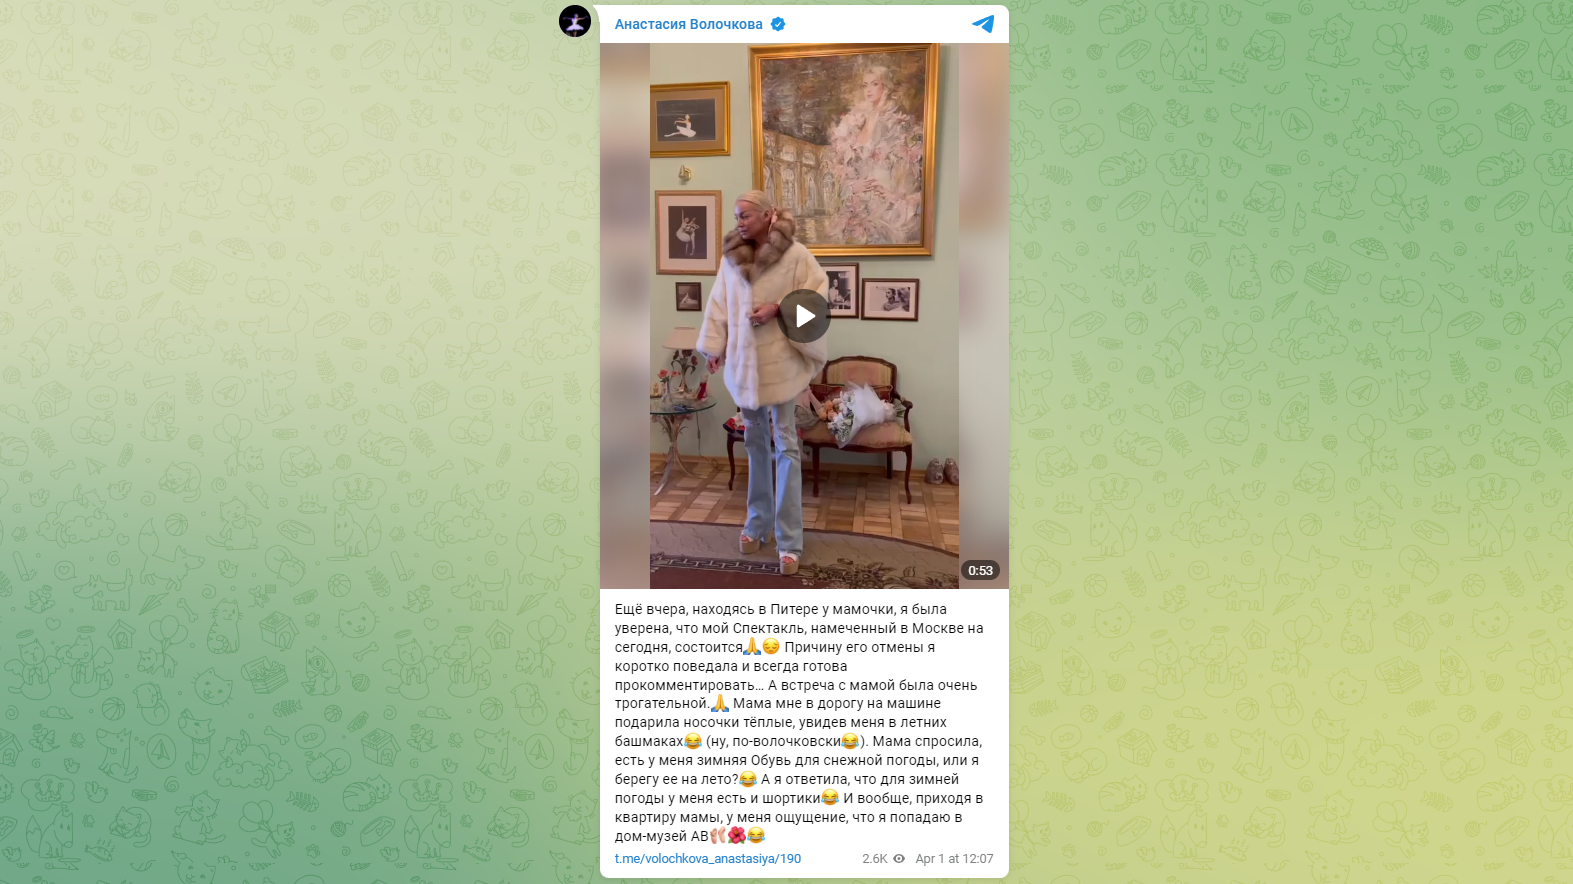 Анастасия Волочкова побывала в гостях у матери, с которой очень редко общается - image 1